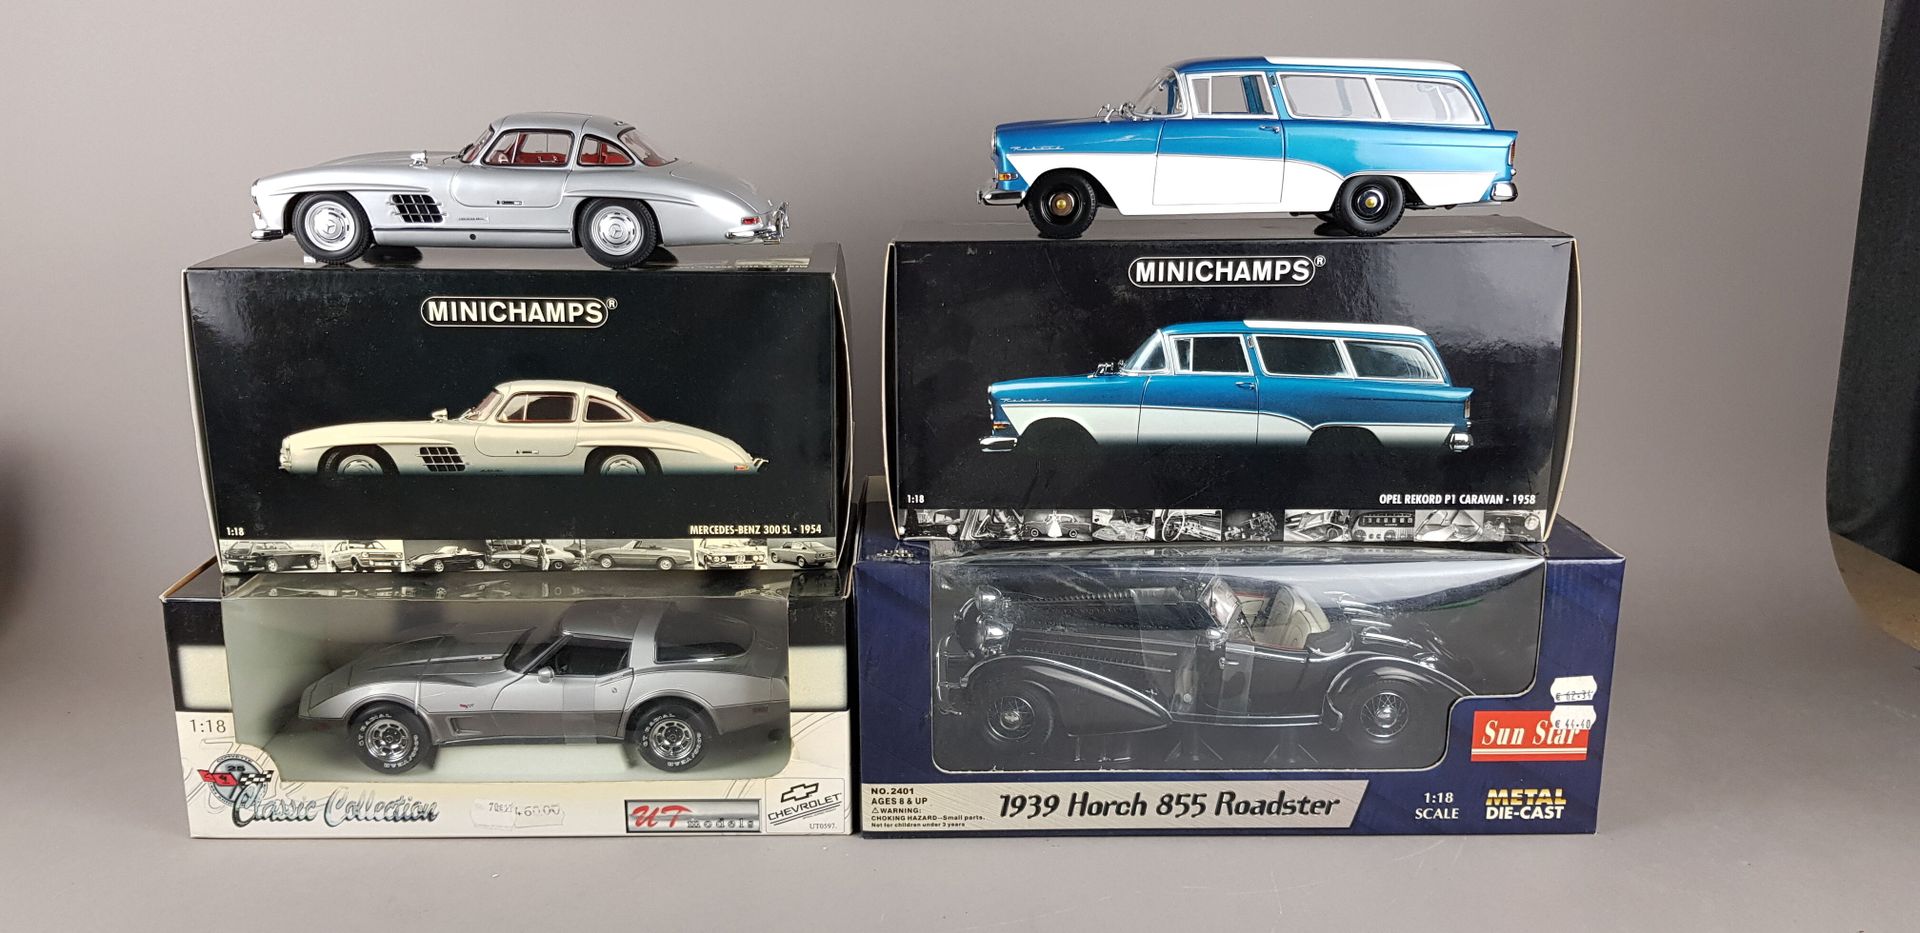 Null QUATRE voitures échelle 1/18 :

1x MINICHAMPS, Mercedes-Benz 300 SL-1954

1&hellip;